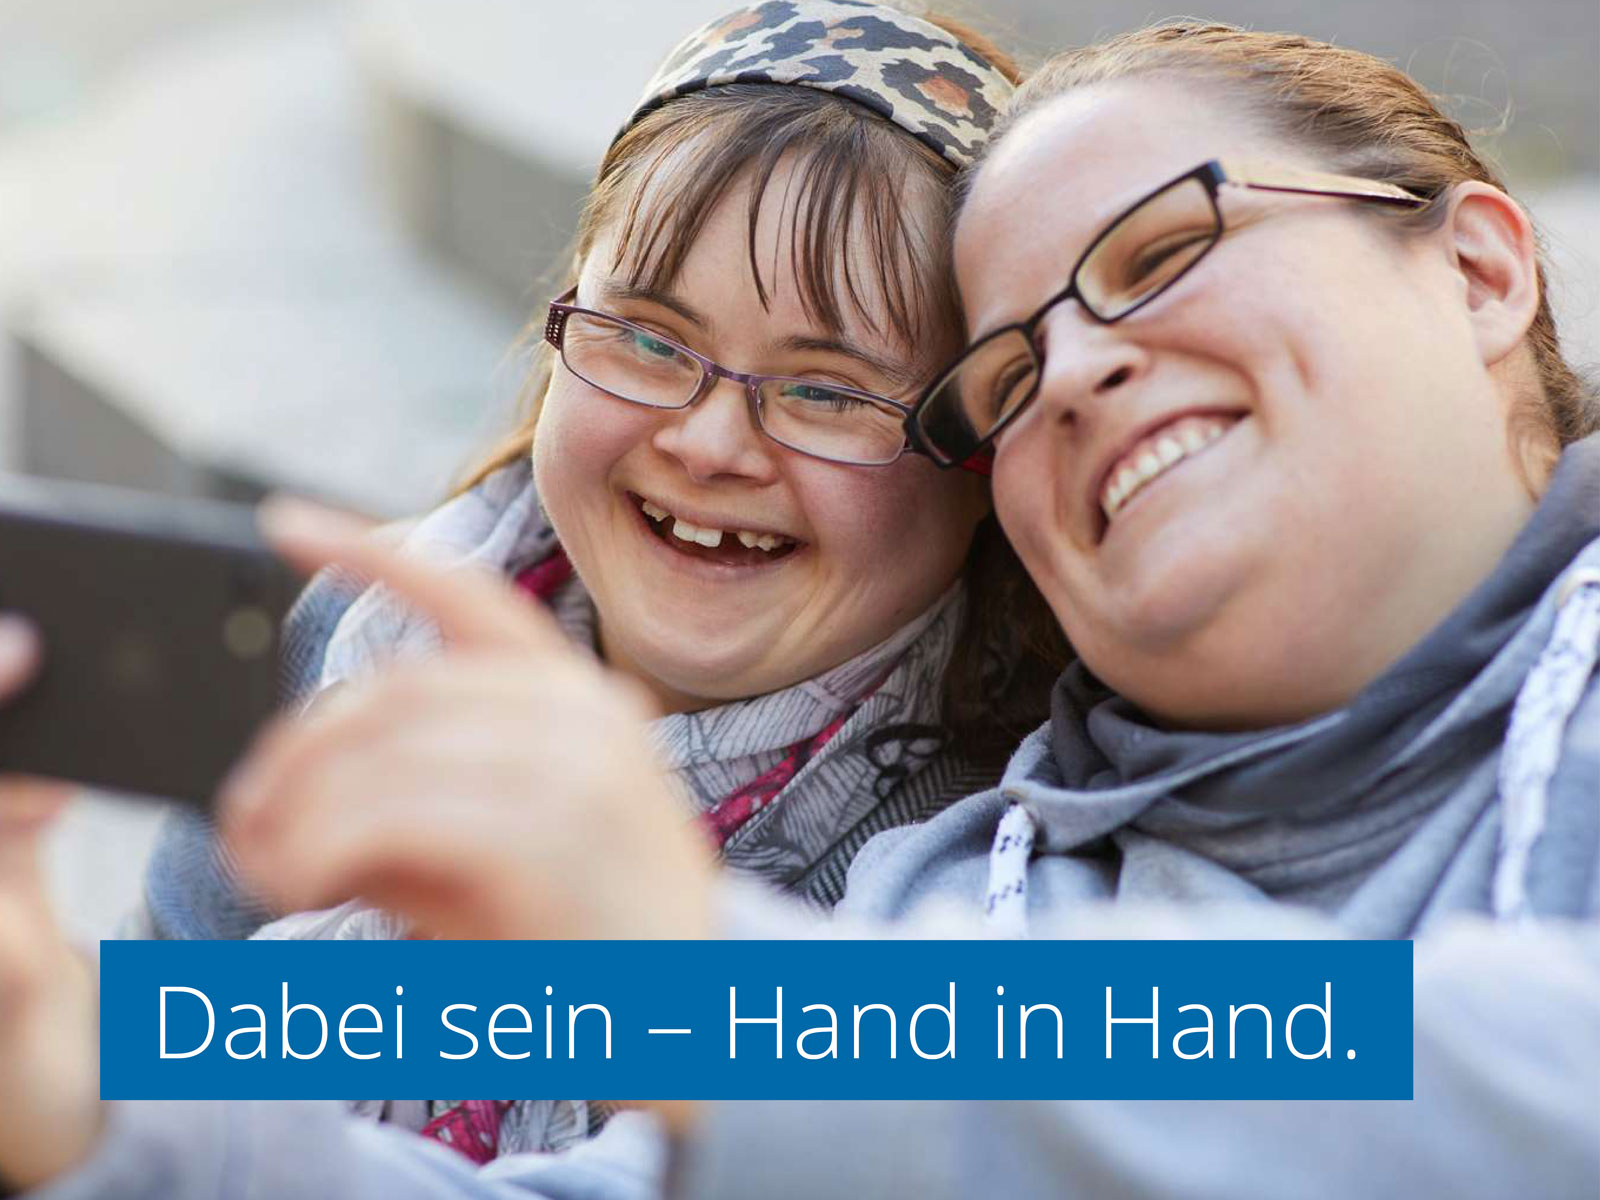 Zwei junge Frauen machen lachend ein Selfie. Eingelassener Text: "Dabei sein - Hand in Hand."